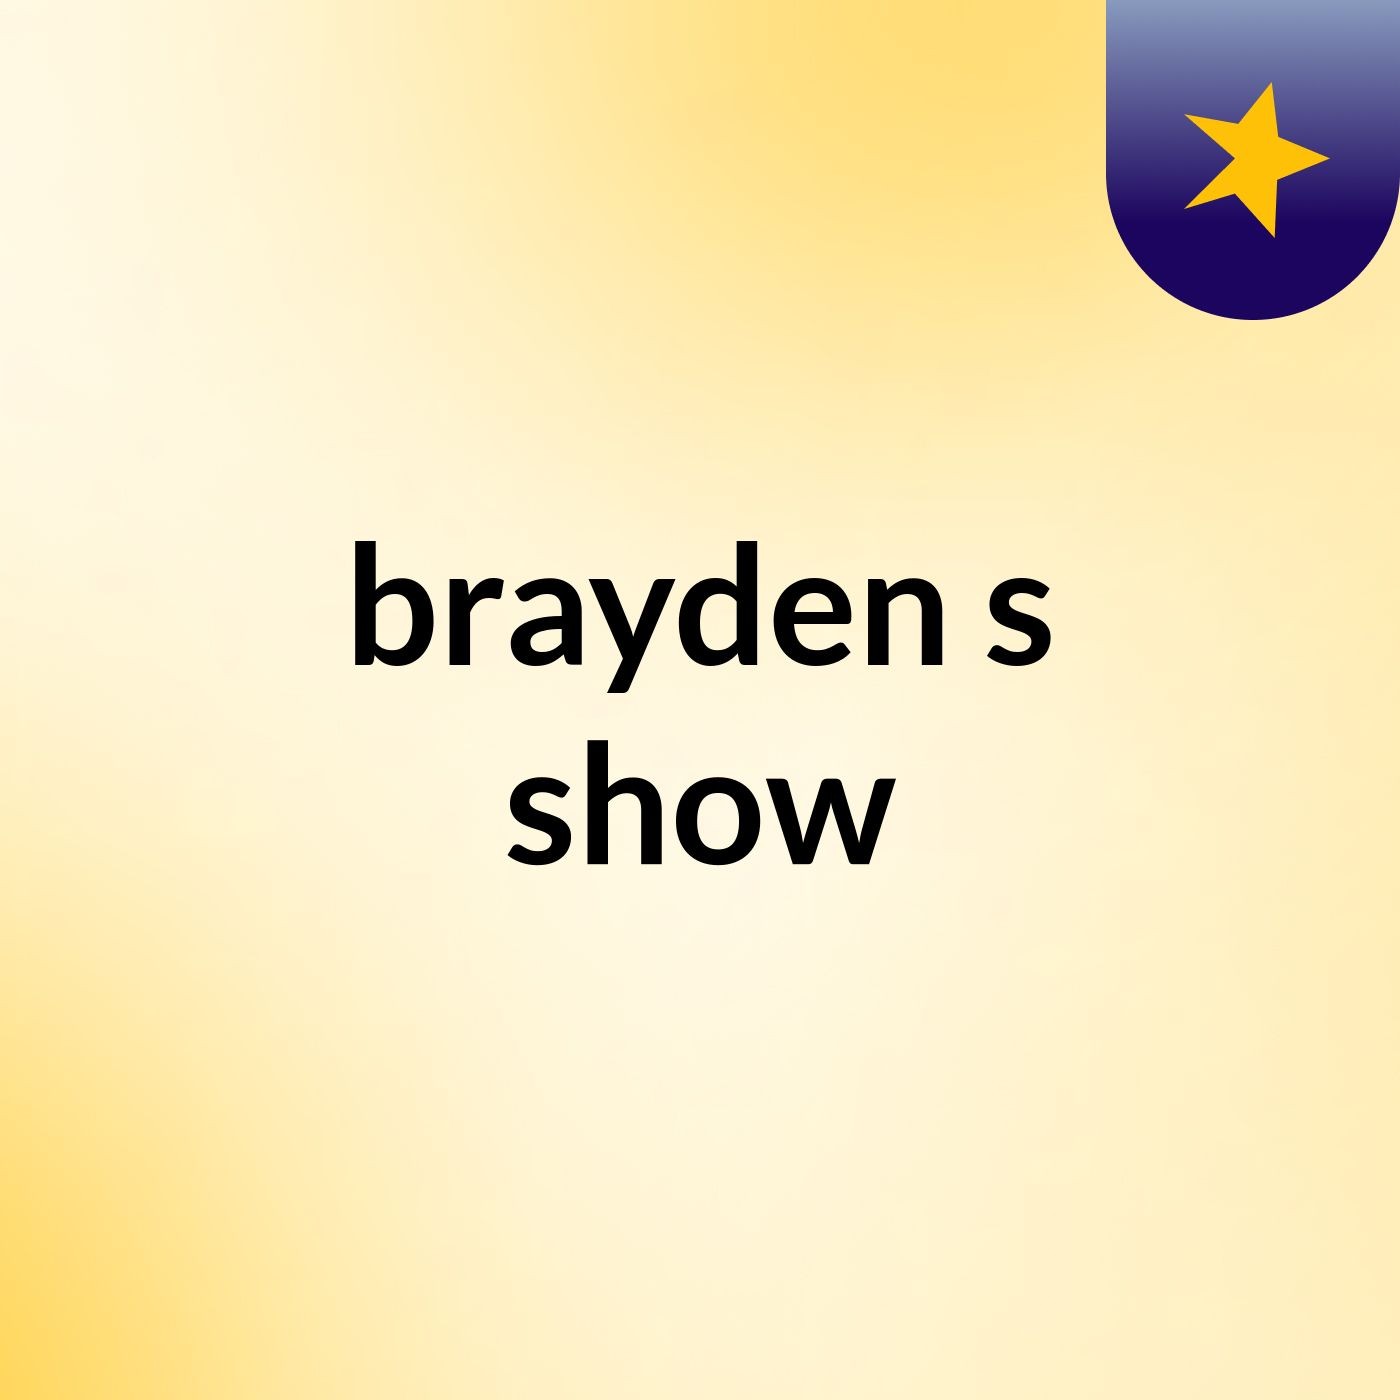 brayden's show